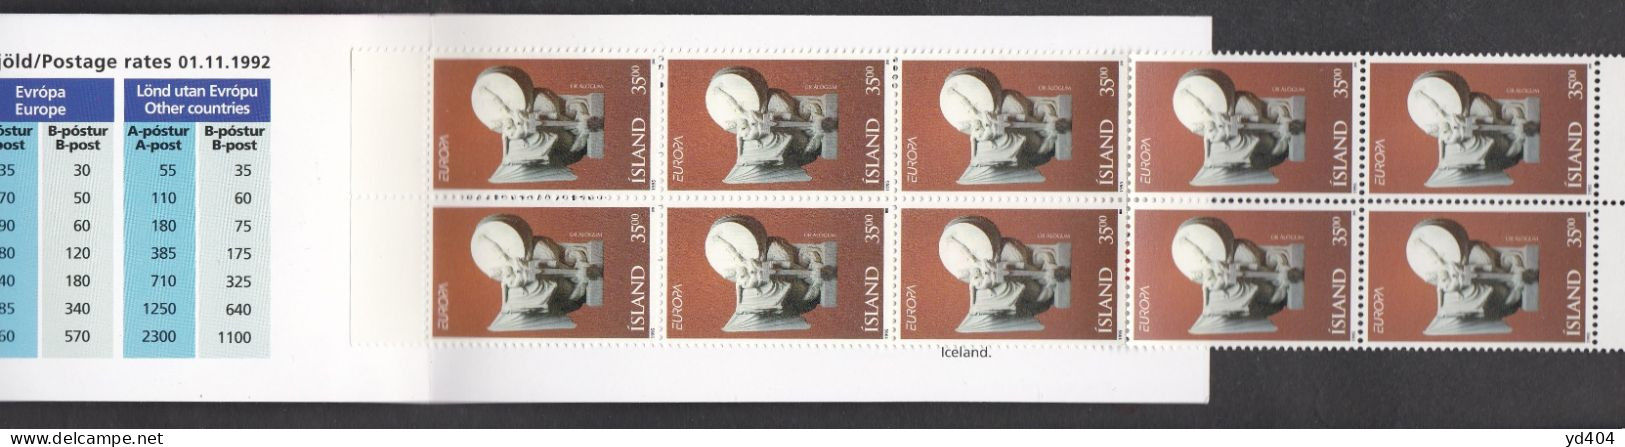 IS668A – ISLANDE - ICELAND - BOOKLETS - 1995 - EUROPA - Y&T # C777 MNH 15 € - Postzegelboekjes